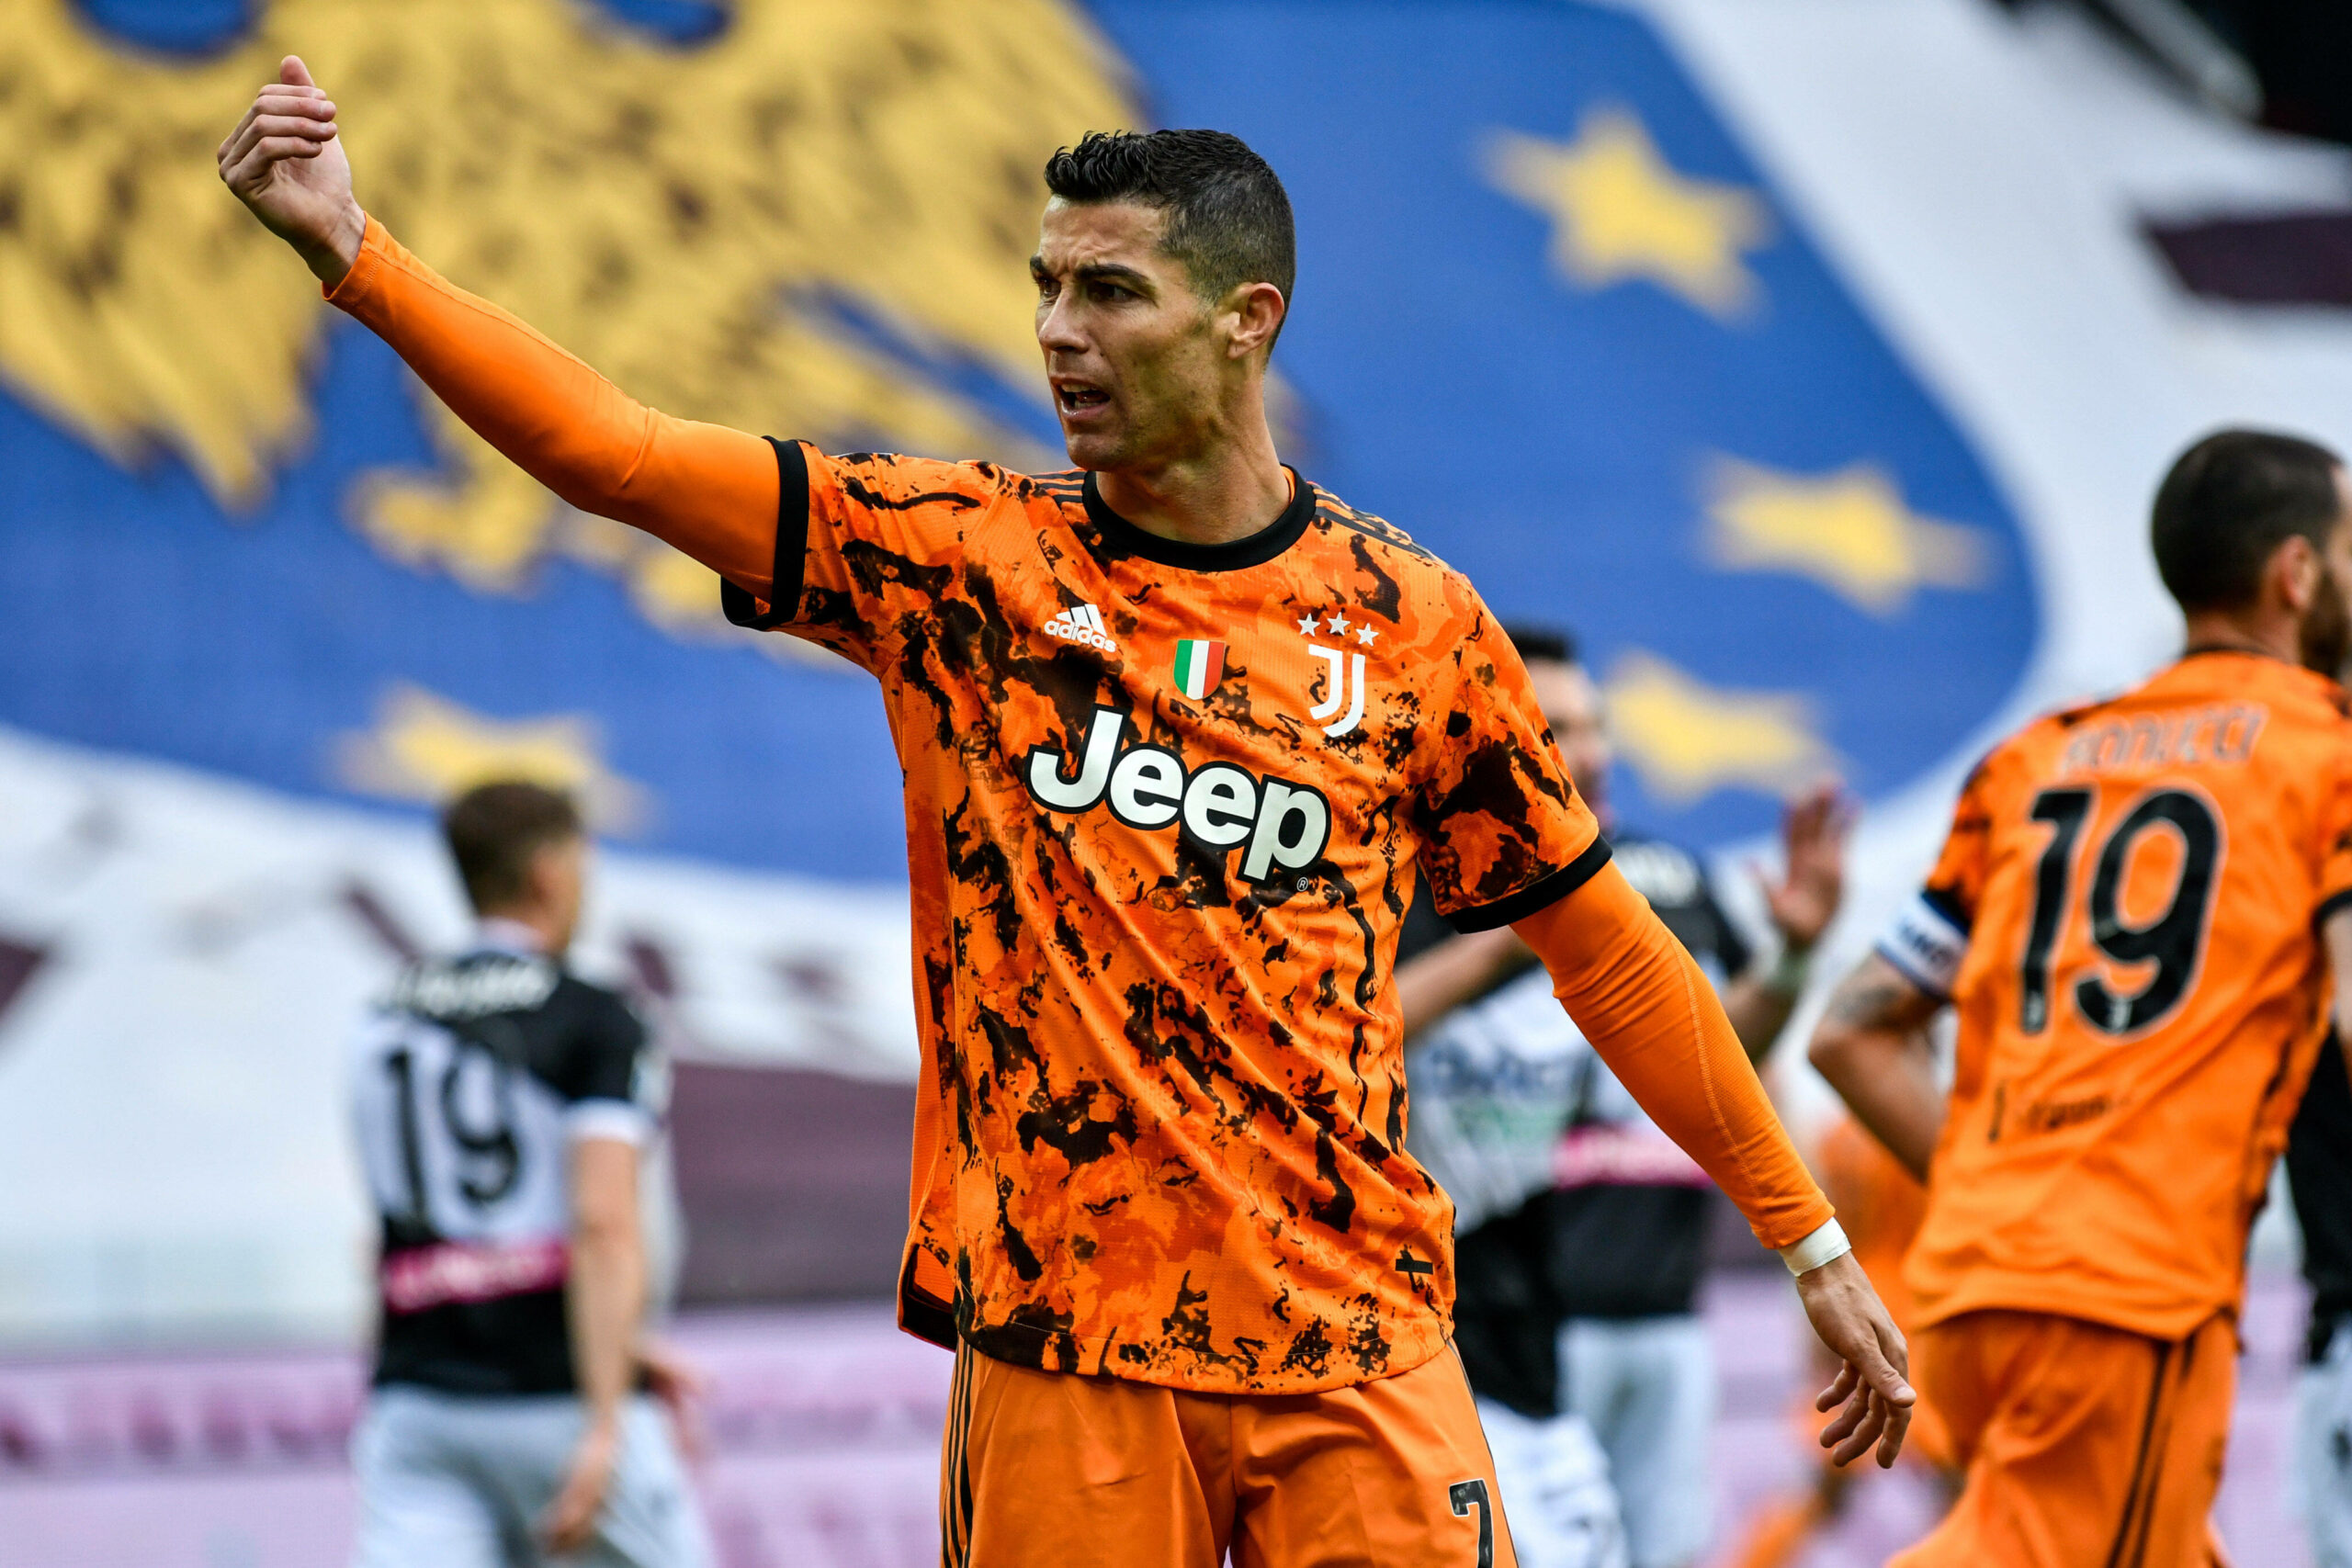 Ronaldo-Doppelpack! Juventus dreht Partie bei Udinese Calcio